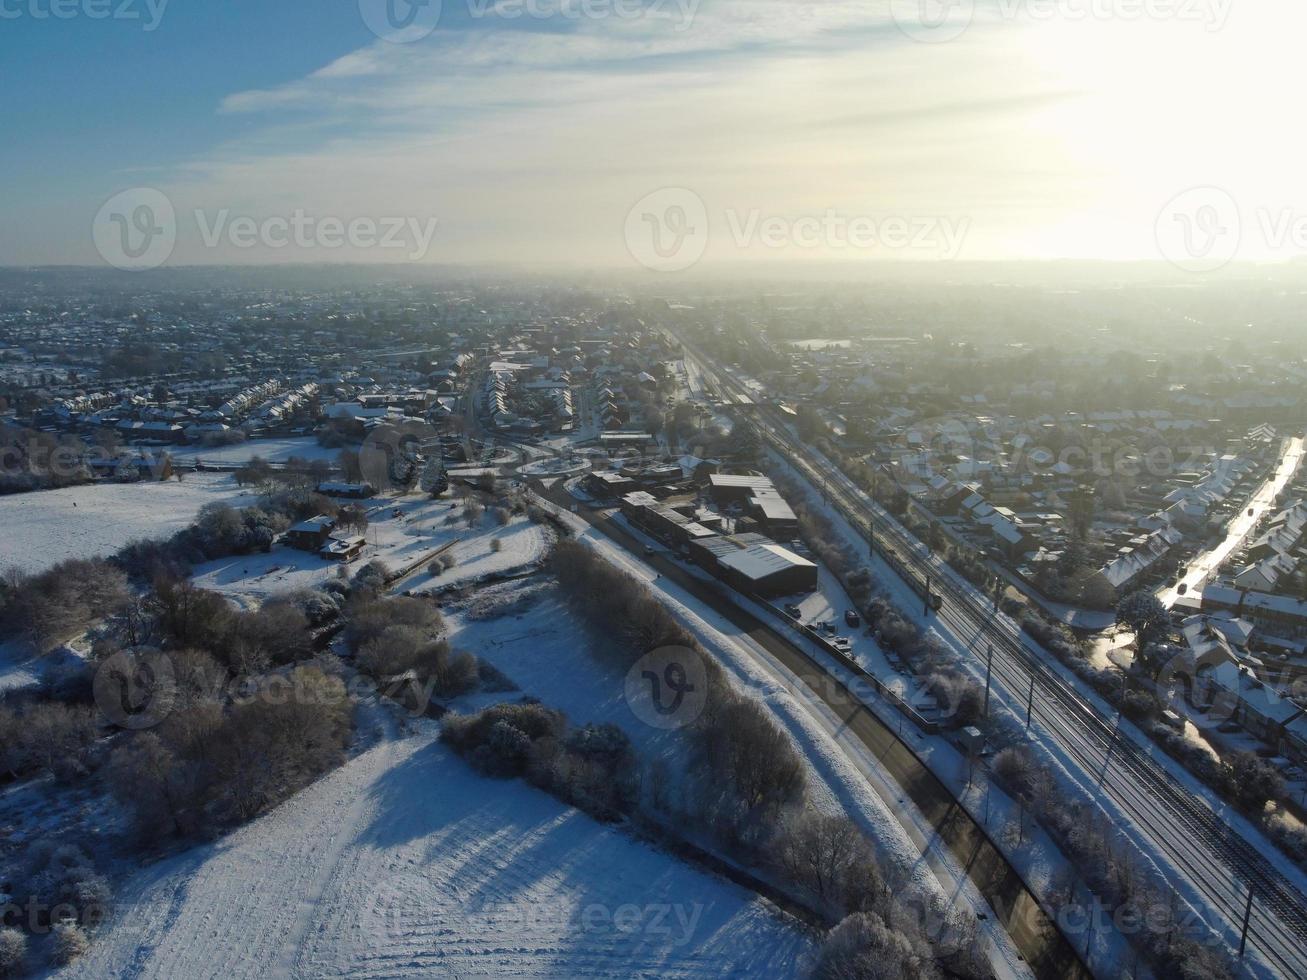 vue en grand angle du paysage et du paysage urbain du nord de luton recouverts de neige, images aériennes de la ville de luton du nord de l'angleterre royaume-uni après la chute de neige. la 1ère chute de neige de cet hiver 2022 photo